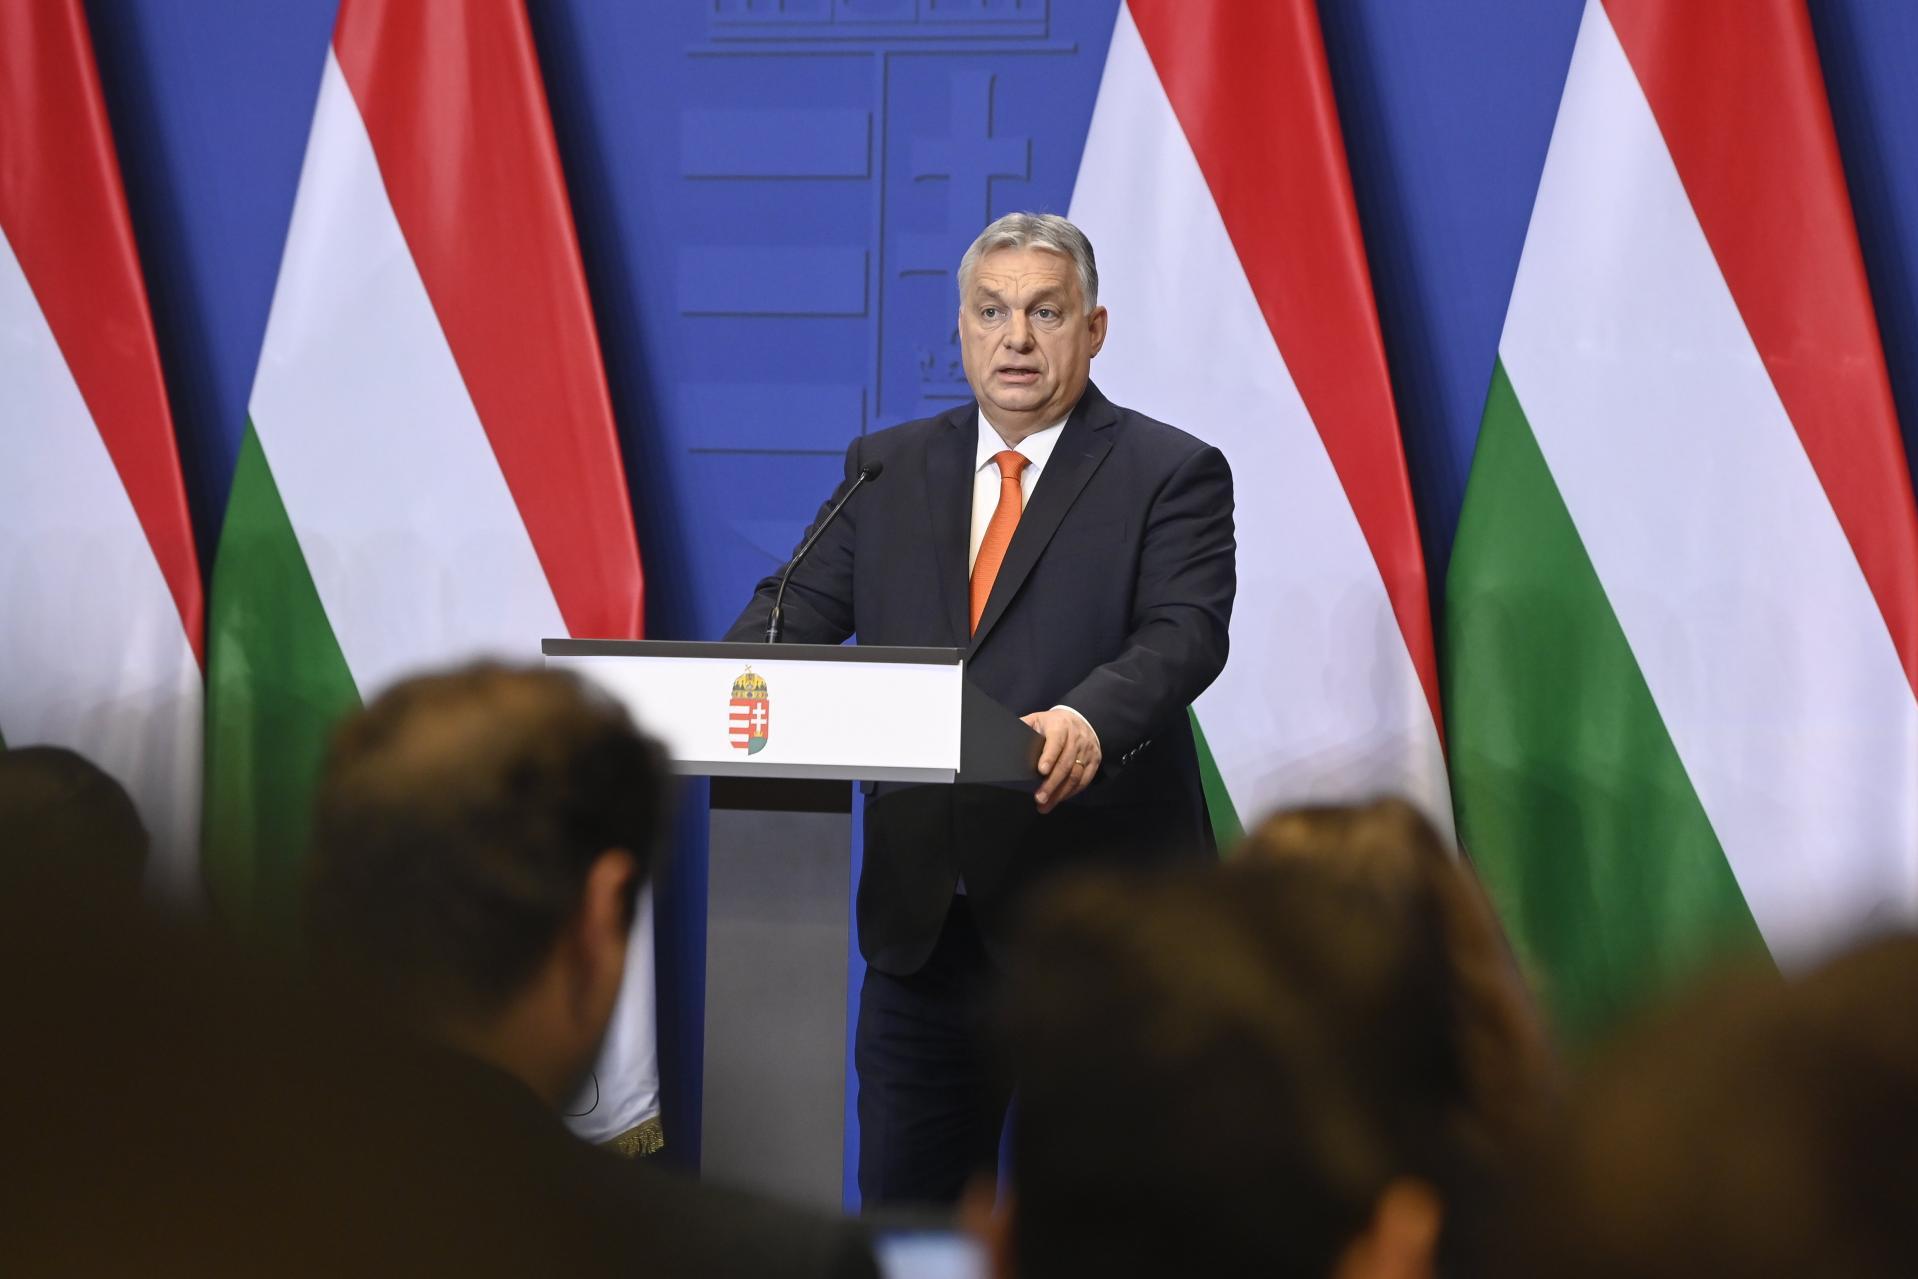 Rendkívüli teljesítményt nyújtott Magyarország a legnehezebb évben is – Kormányközlemény